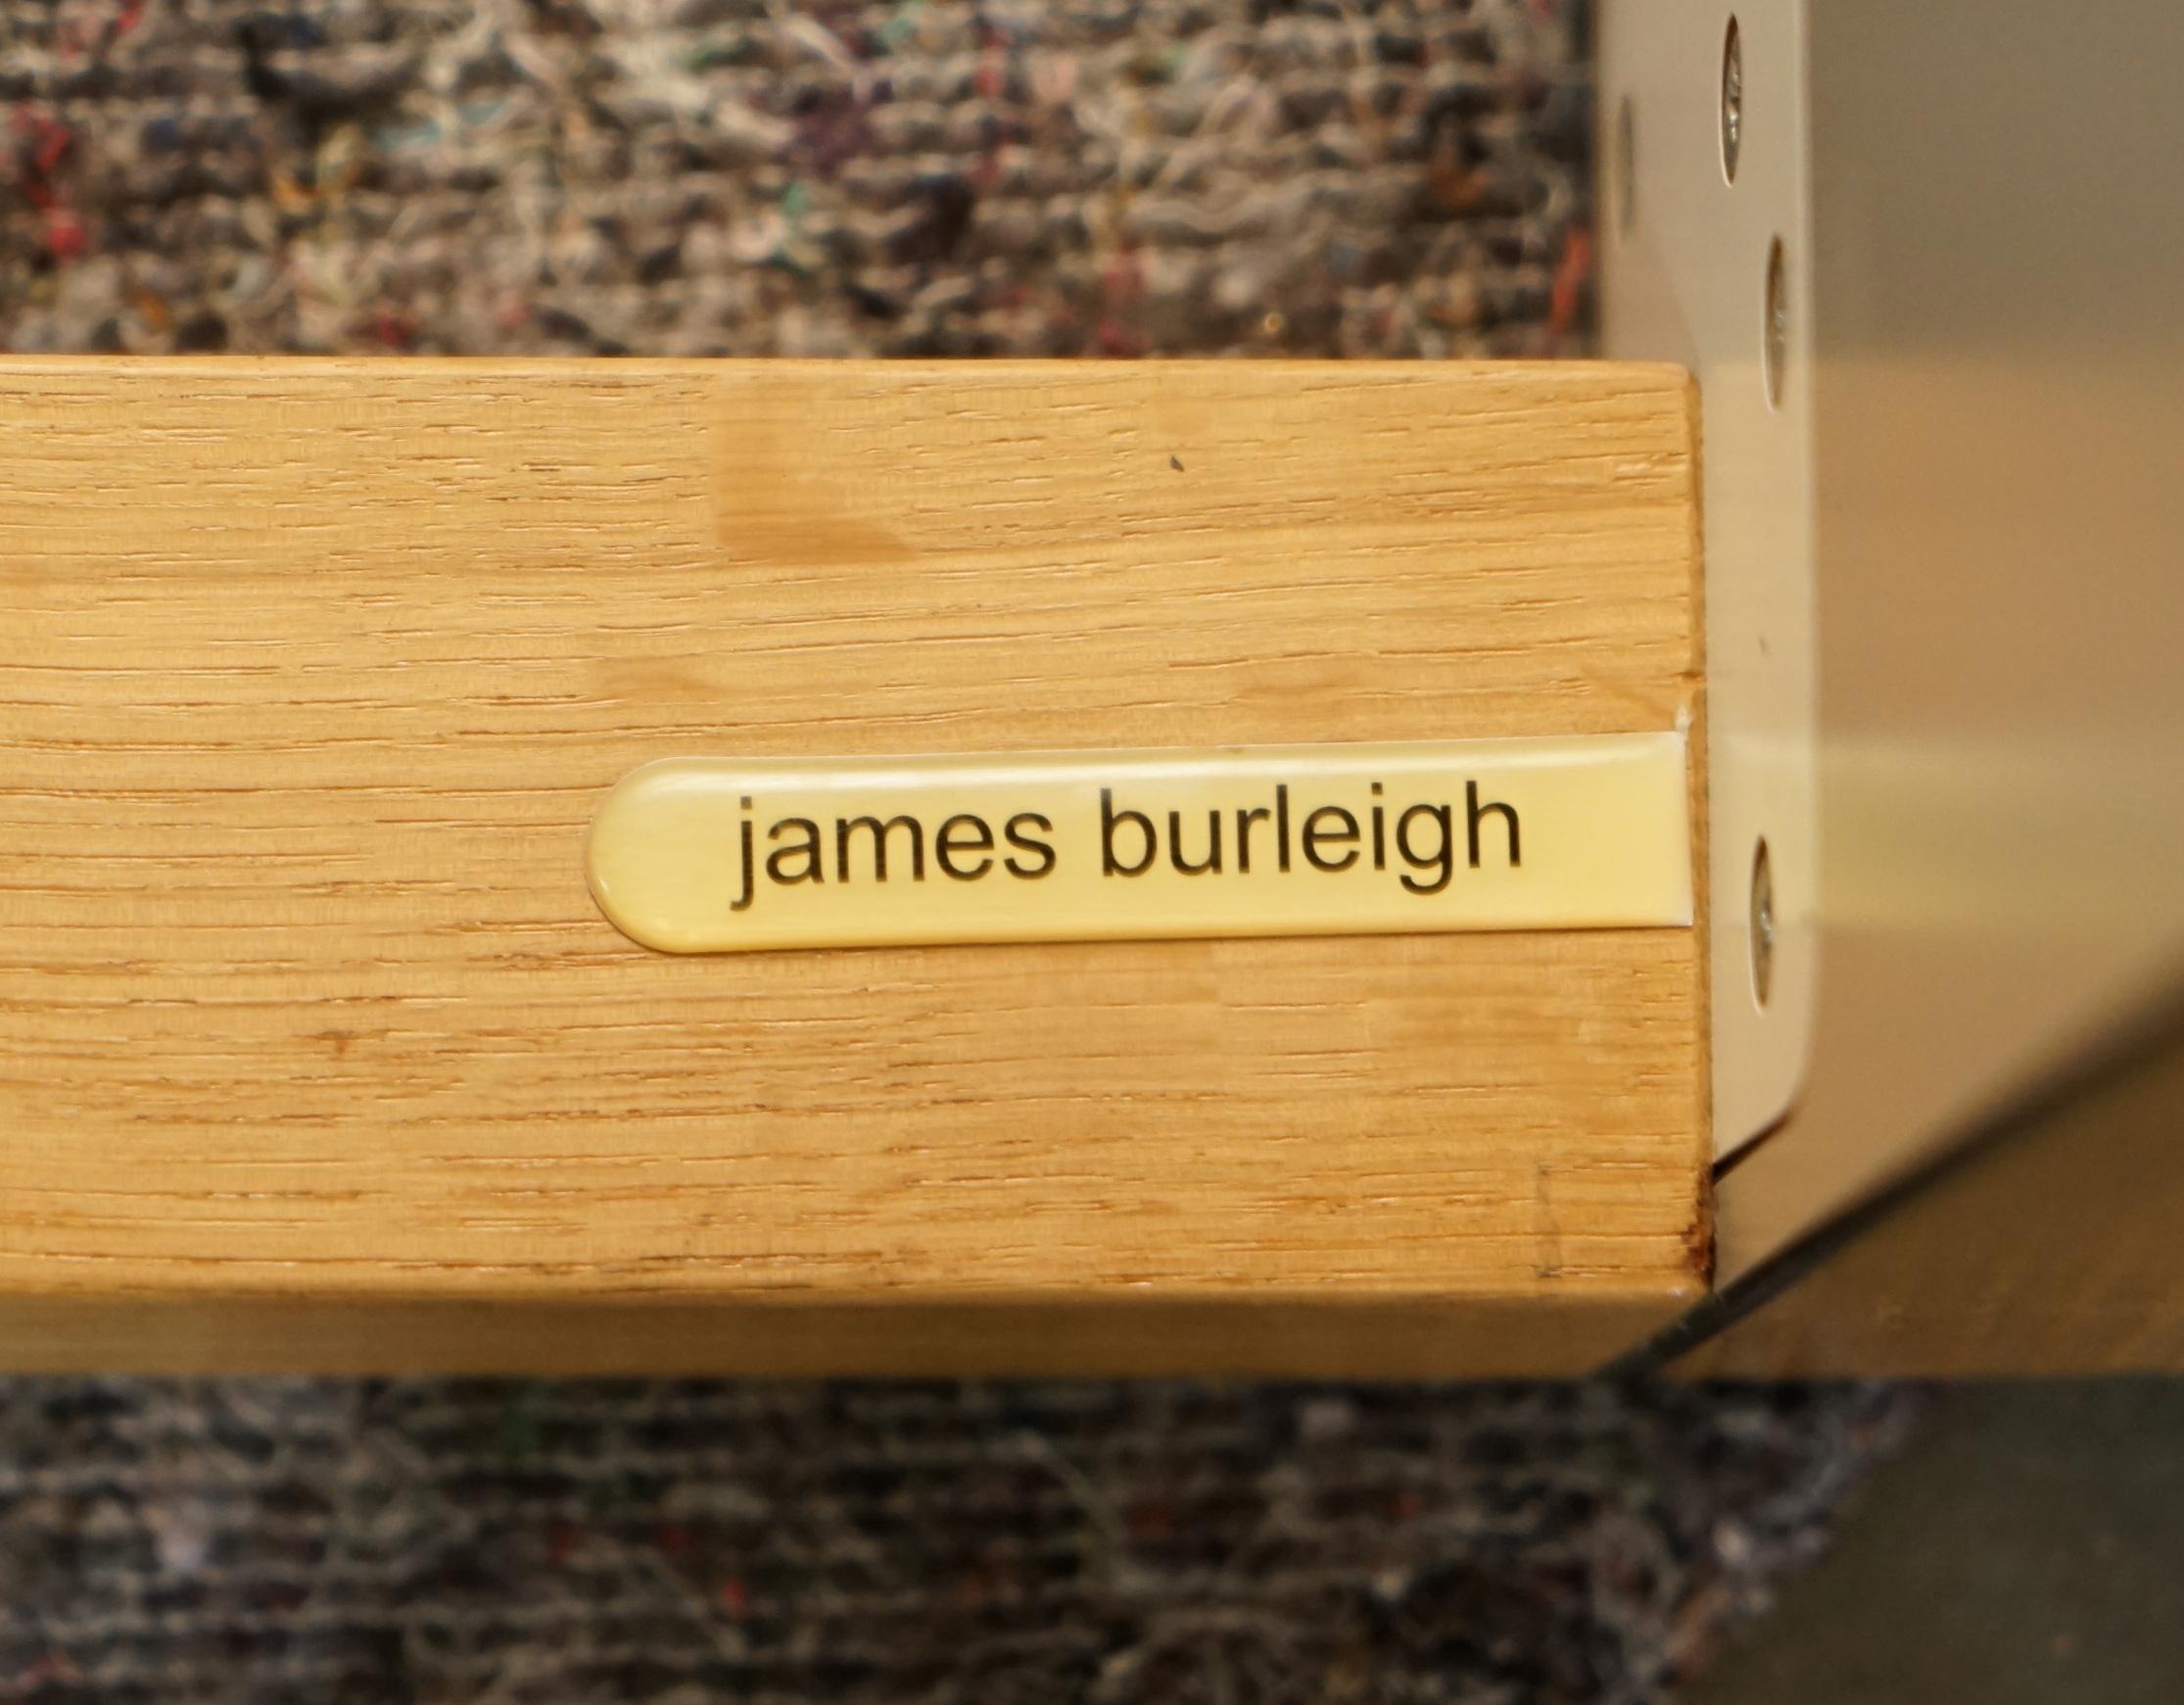 Wir freuen uns, diese schöne, in England handgefertigte James Burleigh Bosa Küchentischbank aus Eichenholz, die Teil einer großen Suite ist, zum Verkauf anbieten zu können.

Ich habe 31 Stück auf Lager, mit hellgrauer, dunkelgrauer und roter